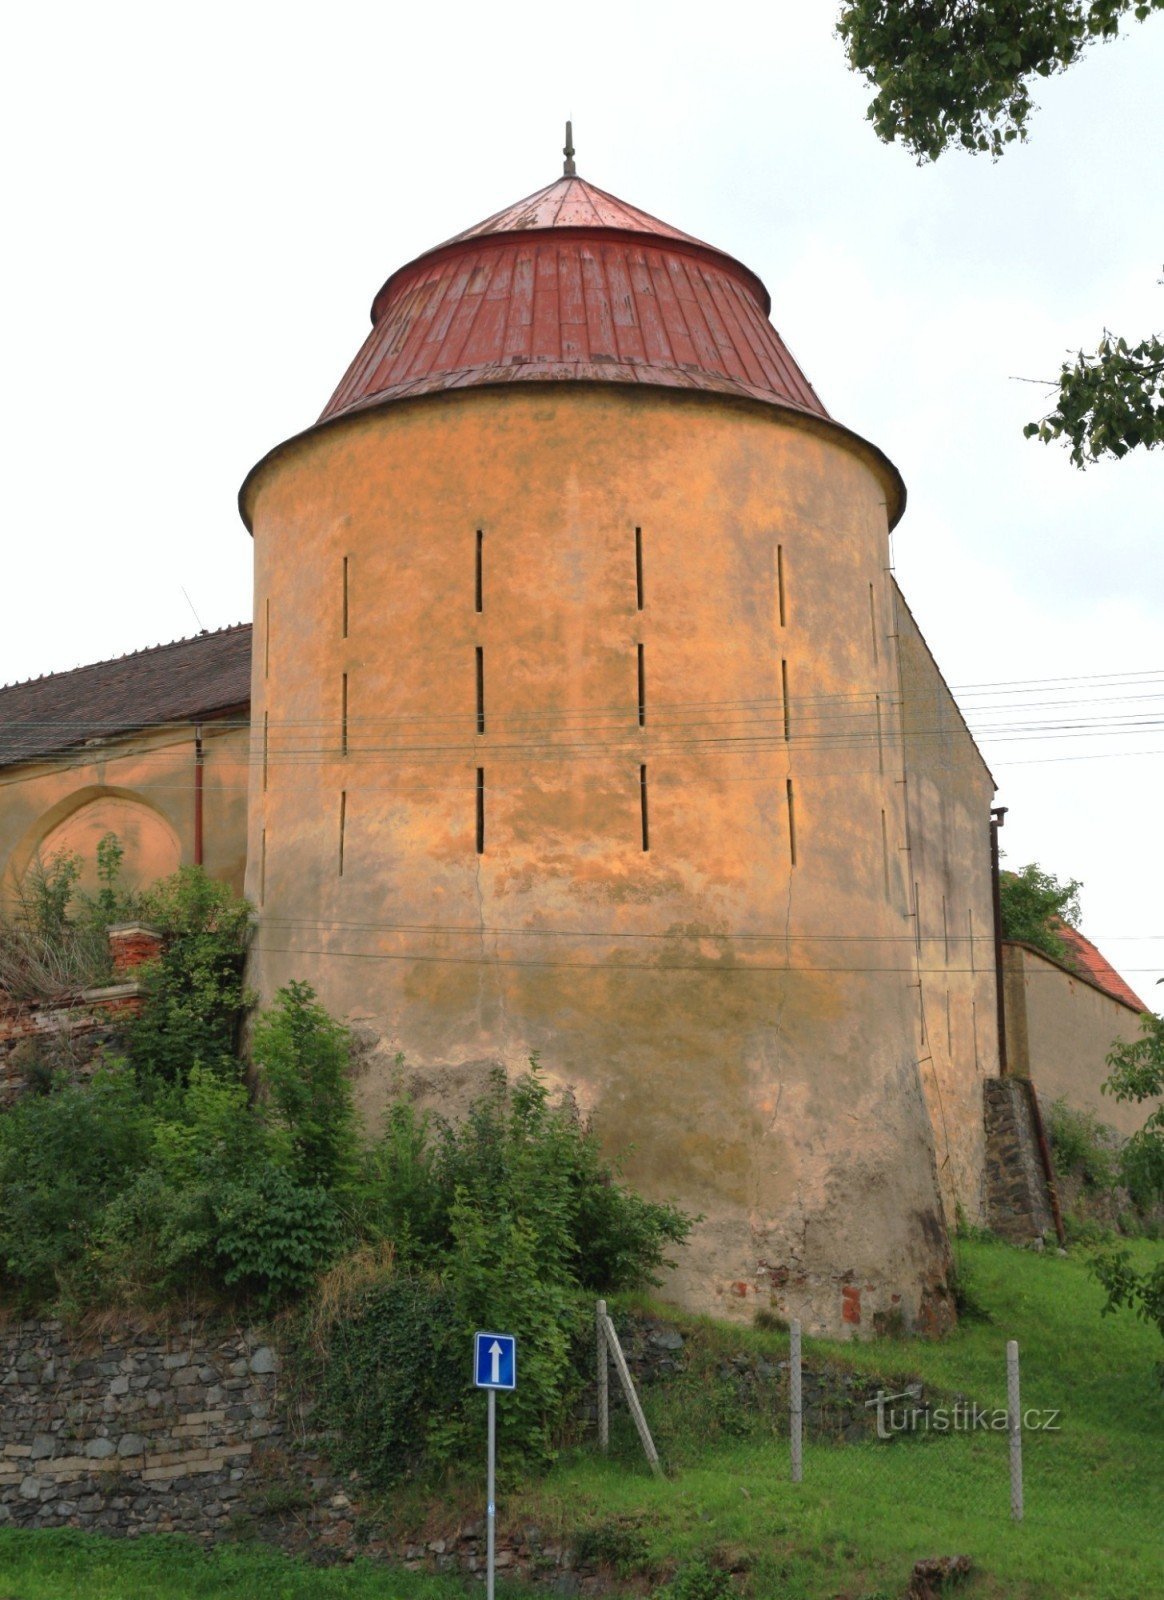 Letovice - bastião do castelo de canto